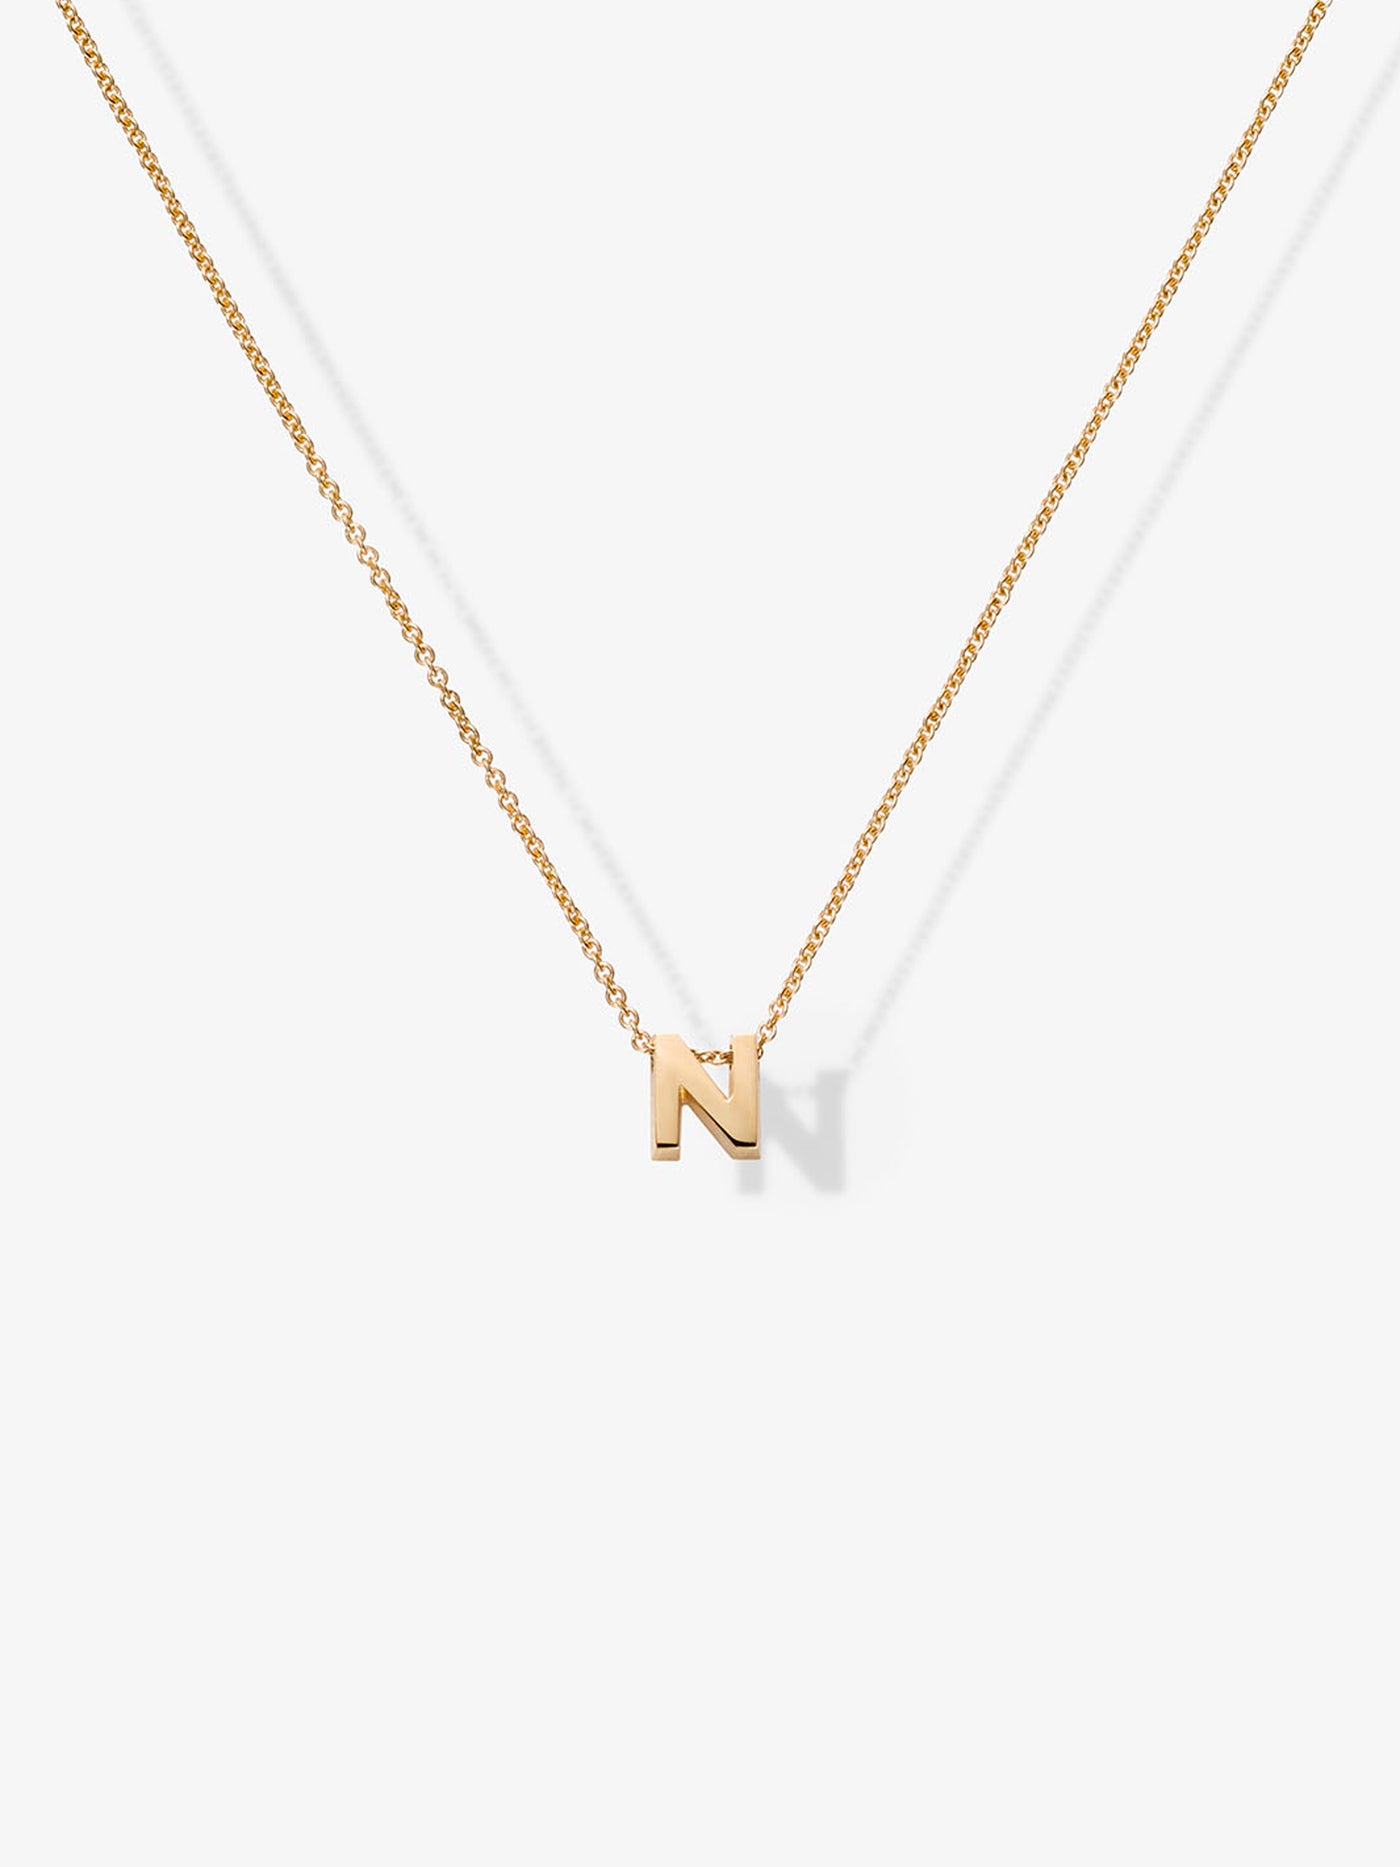 Letter N Necklace in 18k Gold